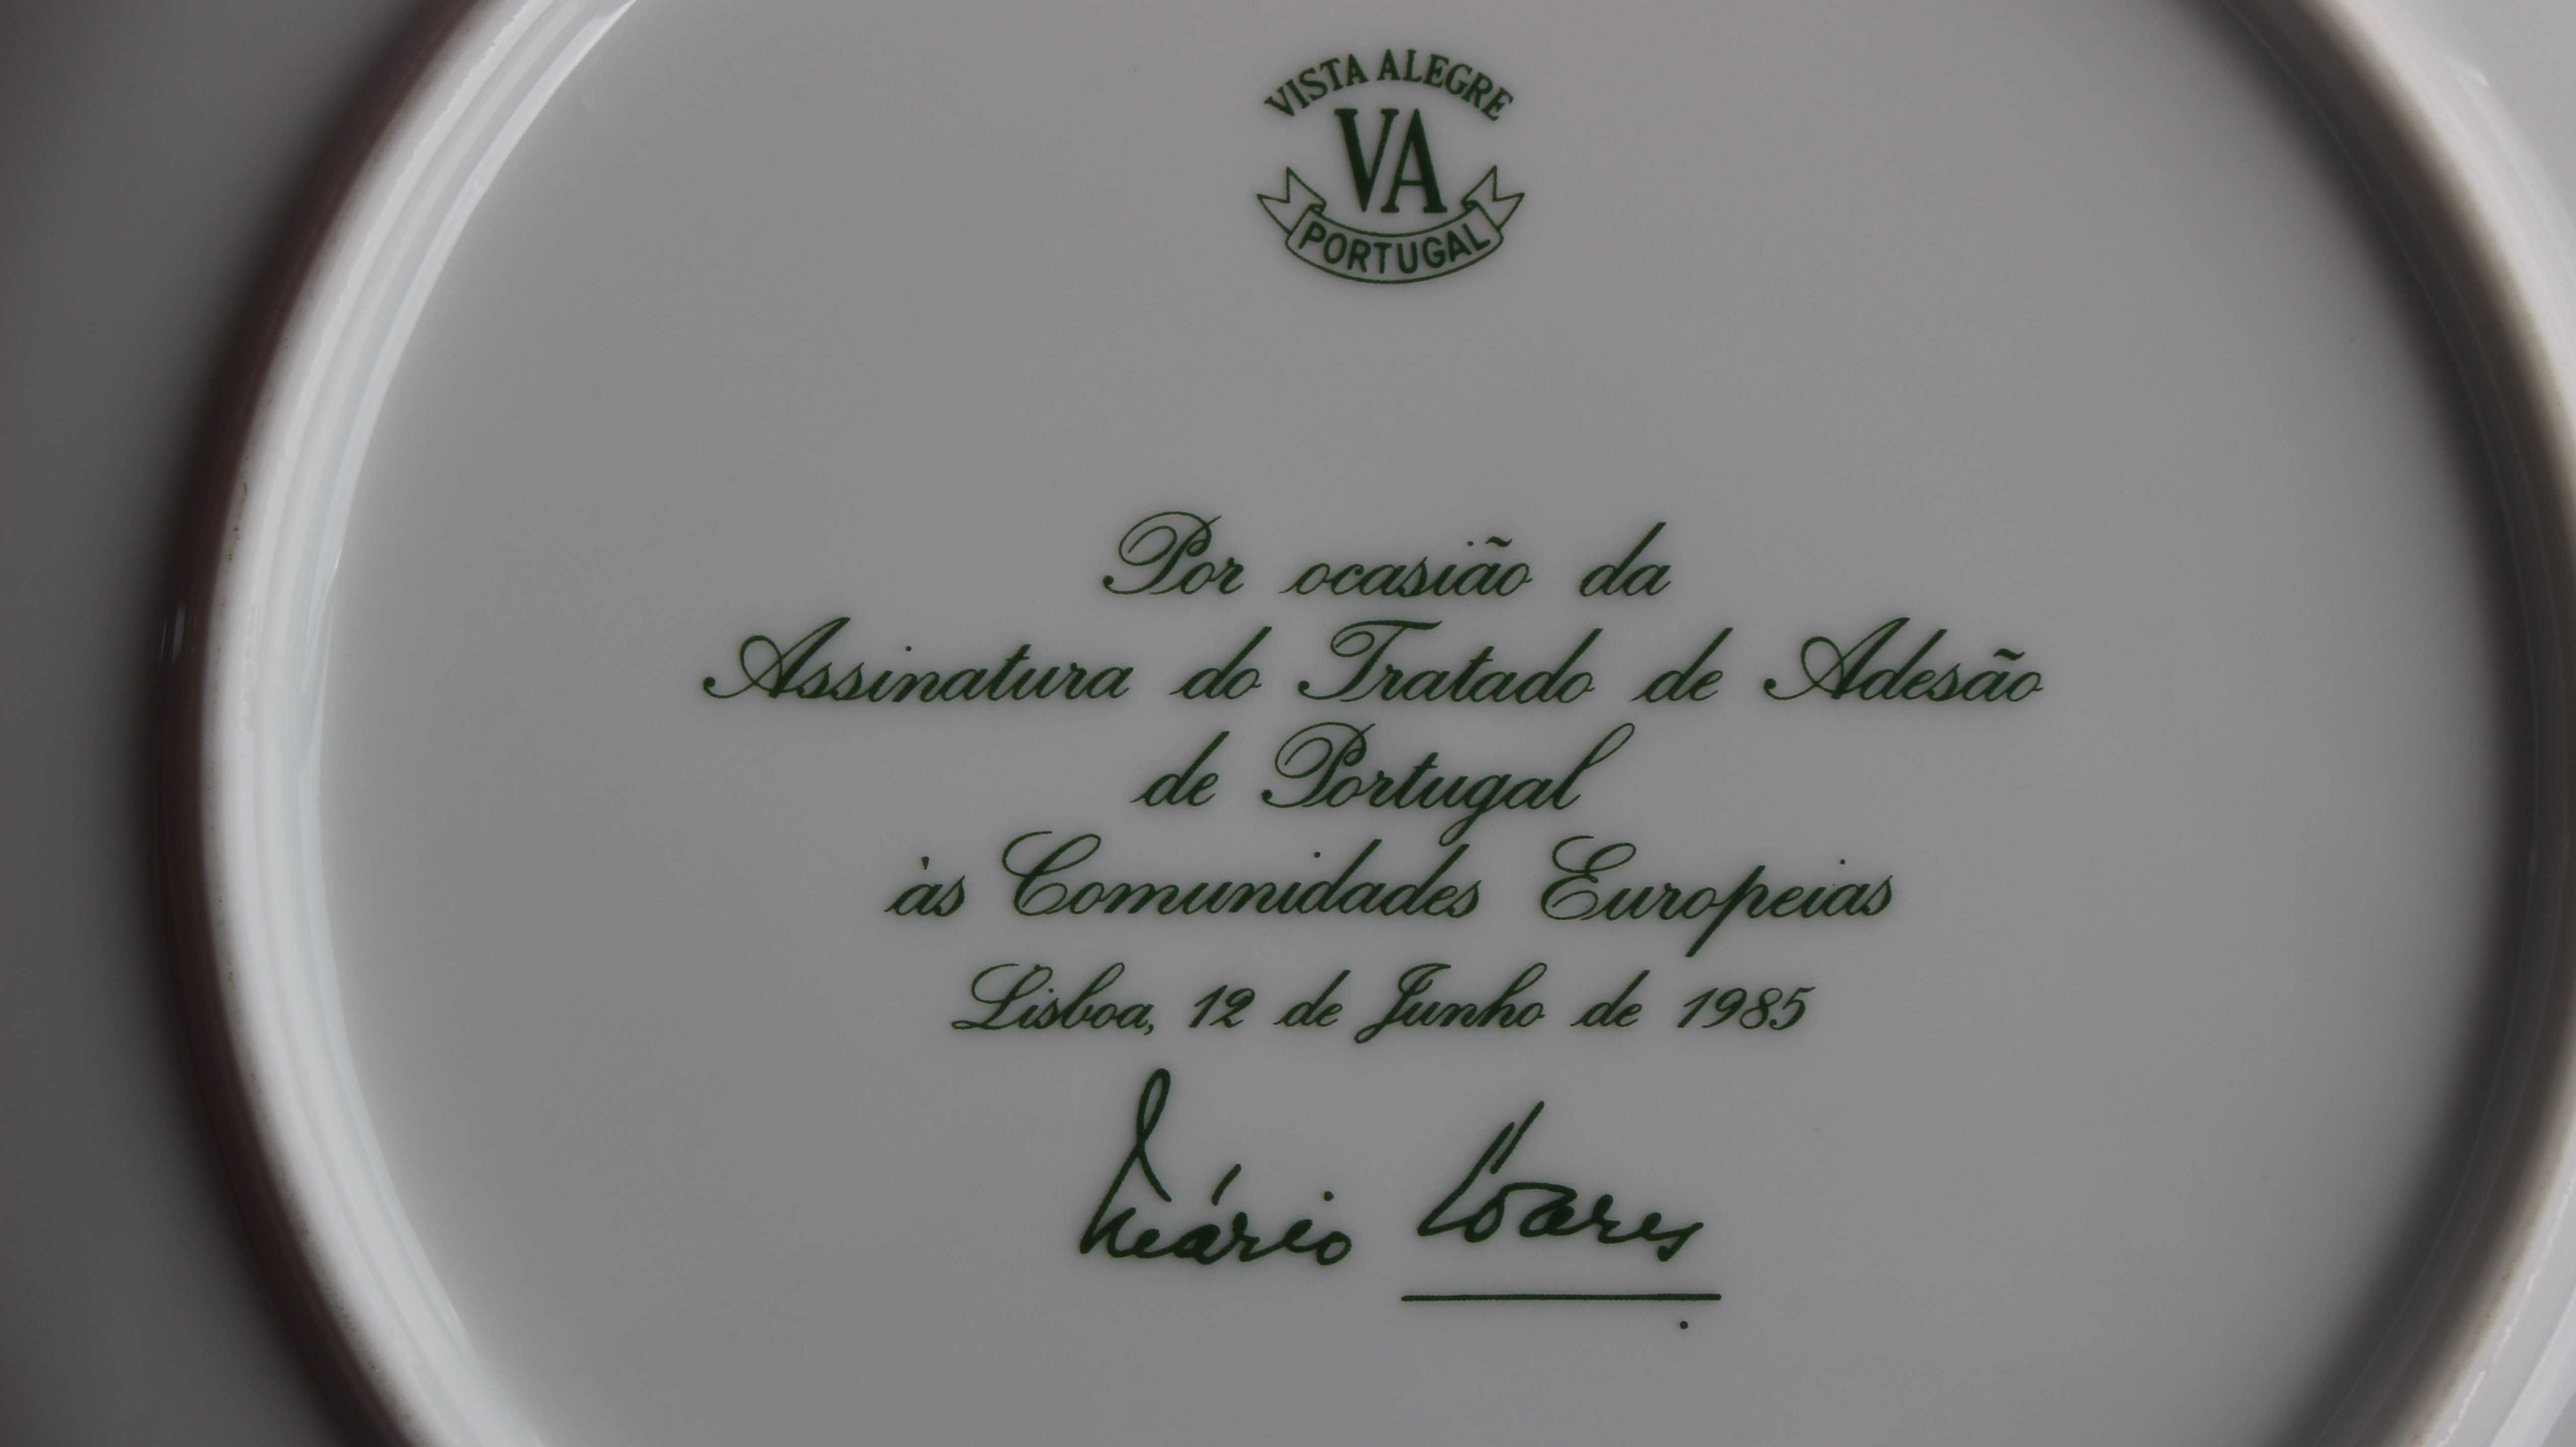 VISTA ALEGRE prato assinatura Adesão Portugal Comunidade Europeia 1985